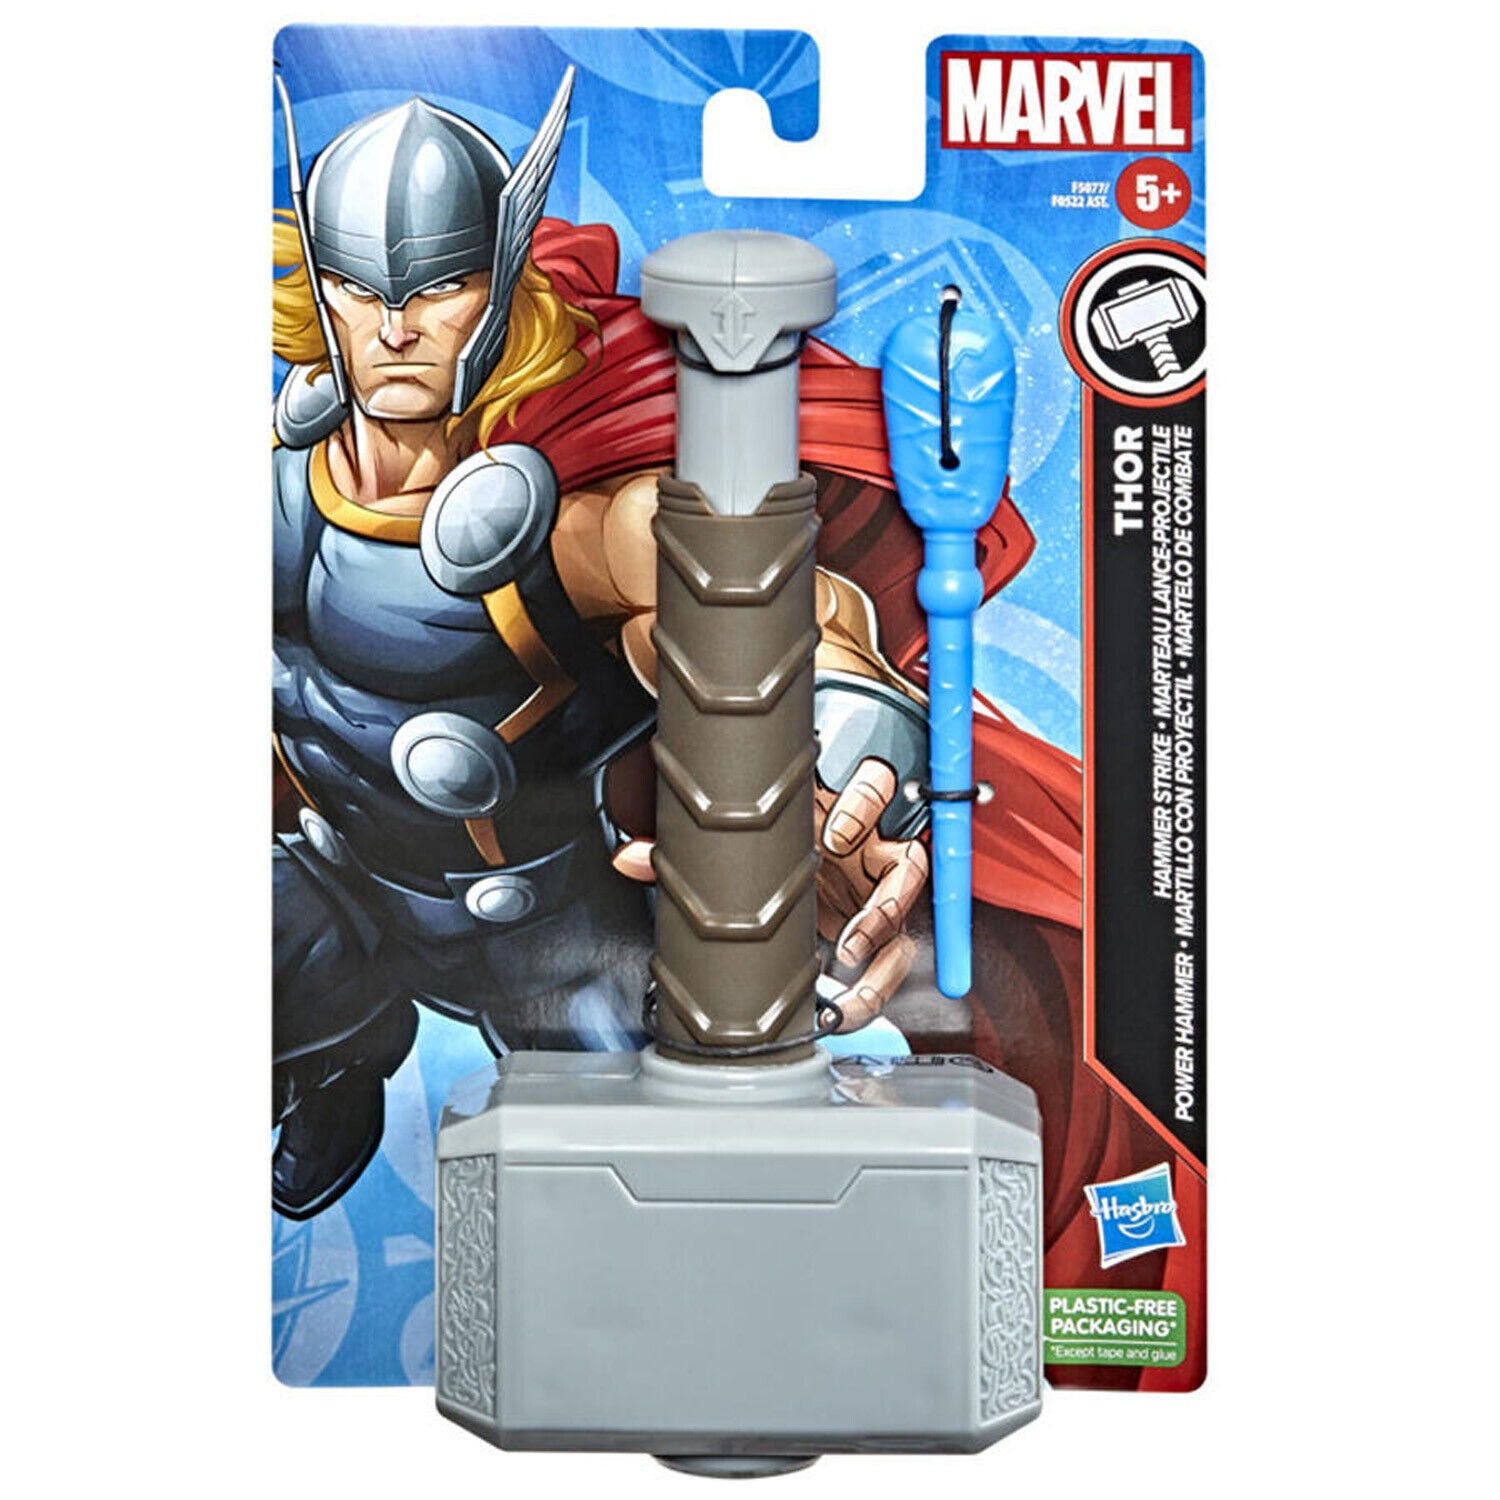 Marvel Thor Hammer Strike Blaster Toy